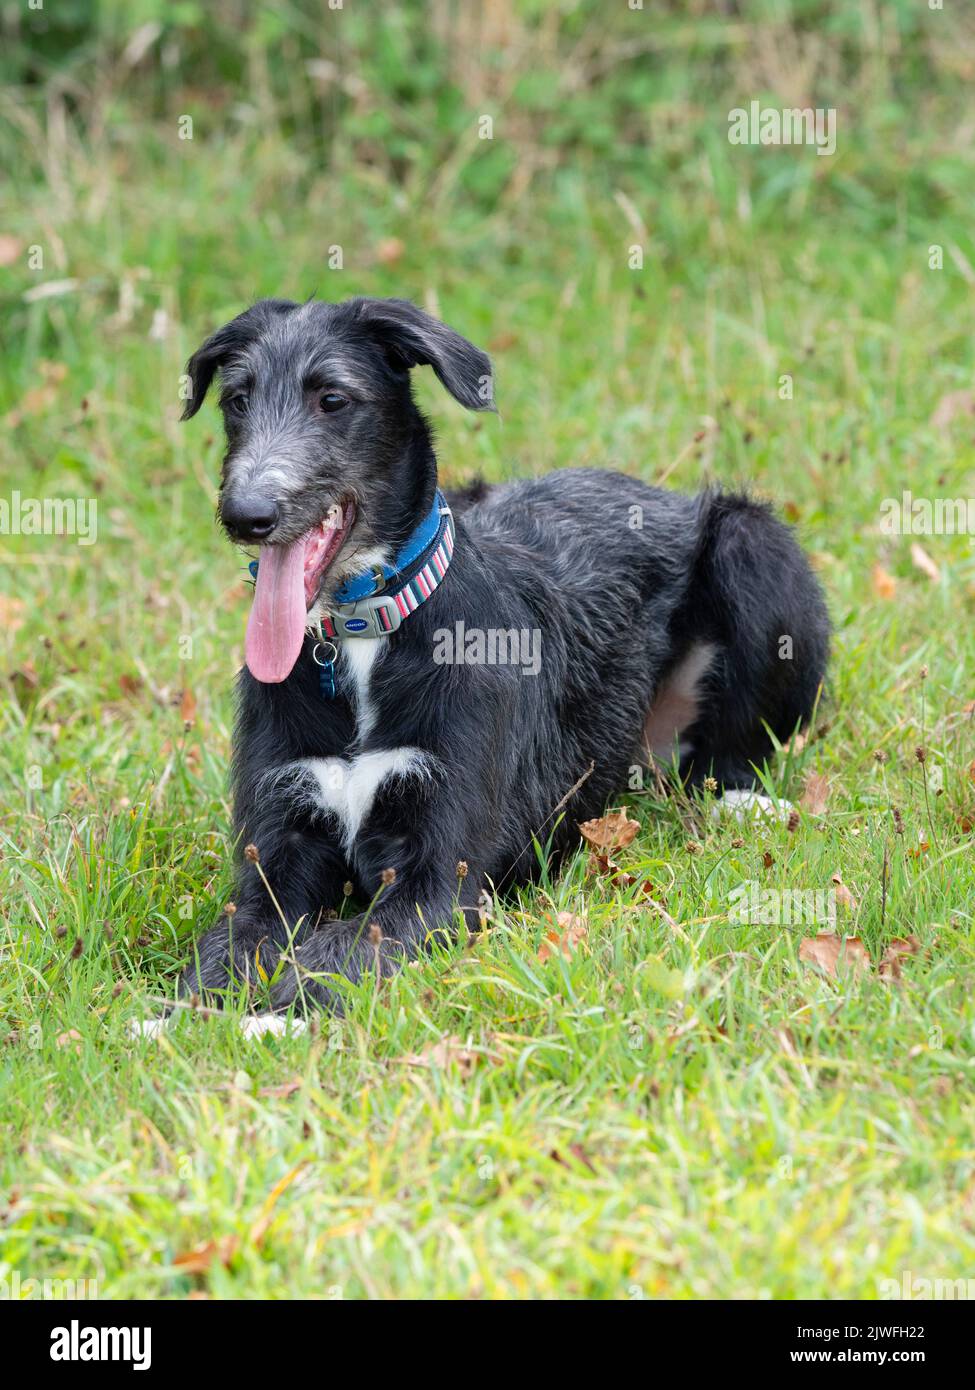 18 semanas de edad macho deeralgo x galgos negro y gris cachorro de durazno descansando en un campo de hierba Foto de stock